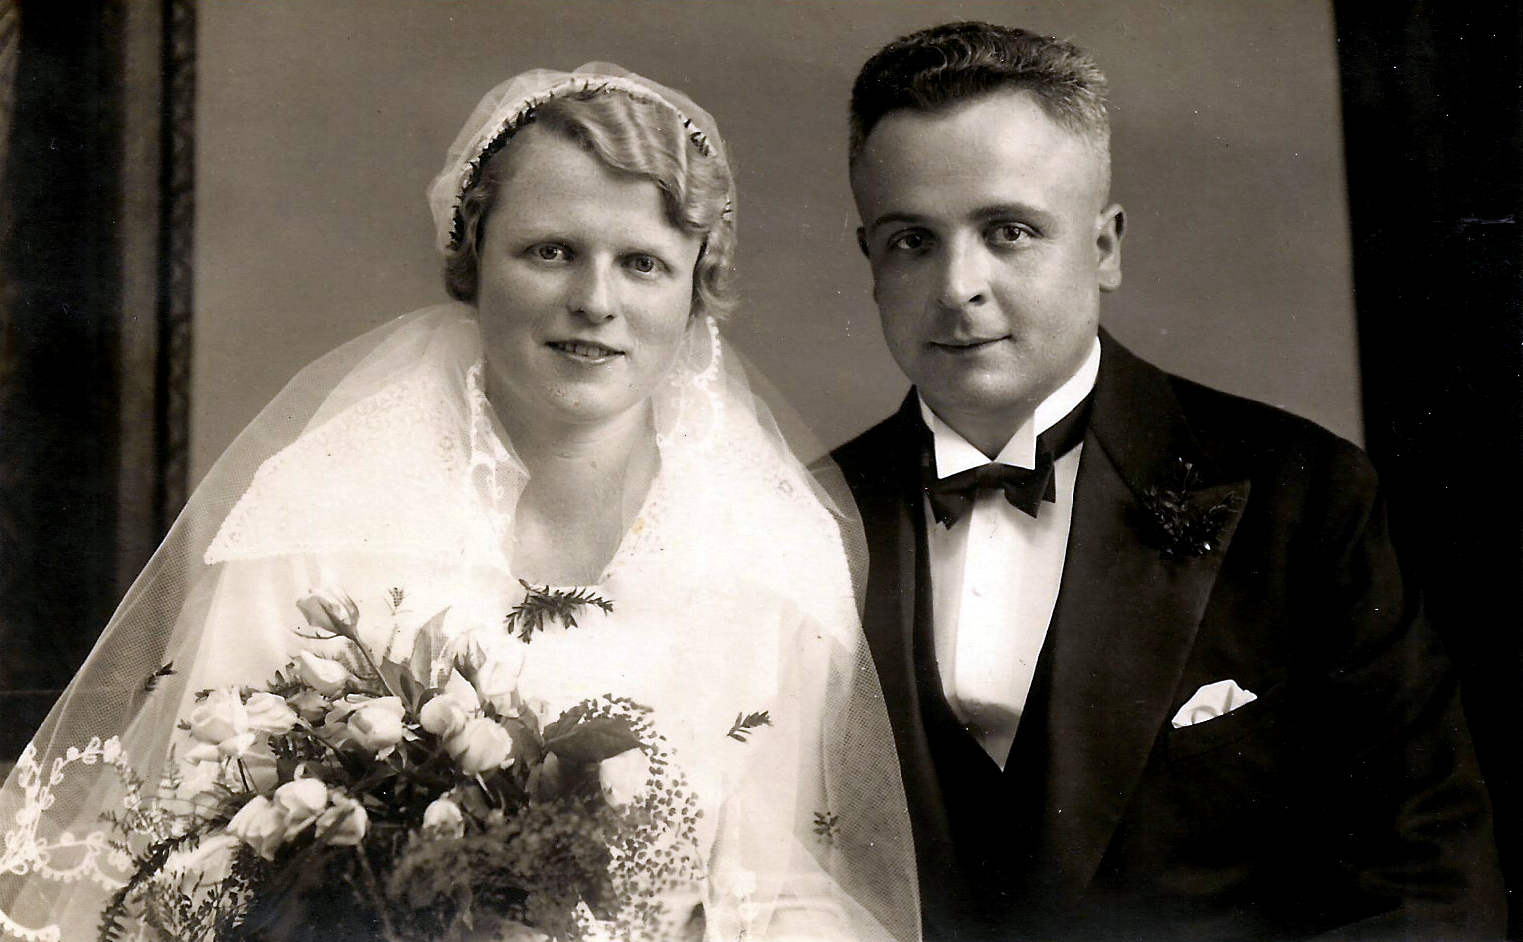 Marriage of Hildegard Just (born on September 11, 1912 in Breslau) and Alfred Jockisch (born December 03, 1907 in Deutschwetter bei Neiße), on July 24, in Schlesien (Silesia).